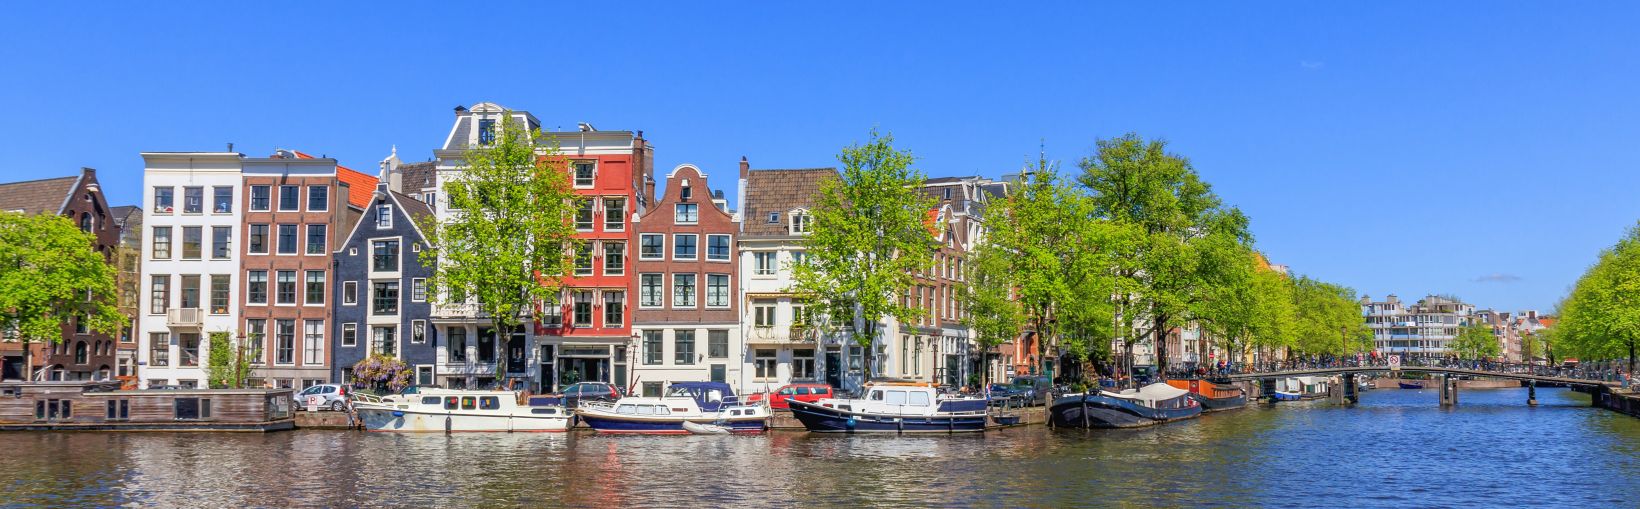 Vue panoramique des maisons près des canaux à Amsterdam